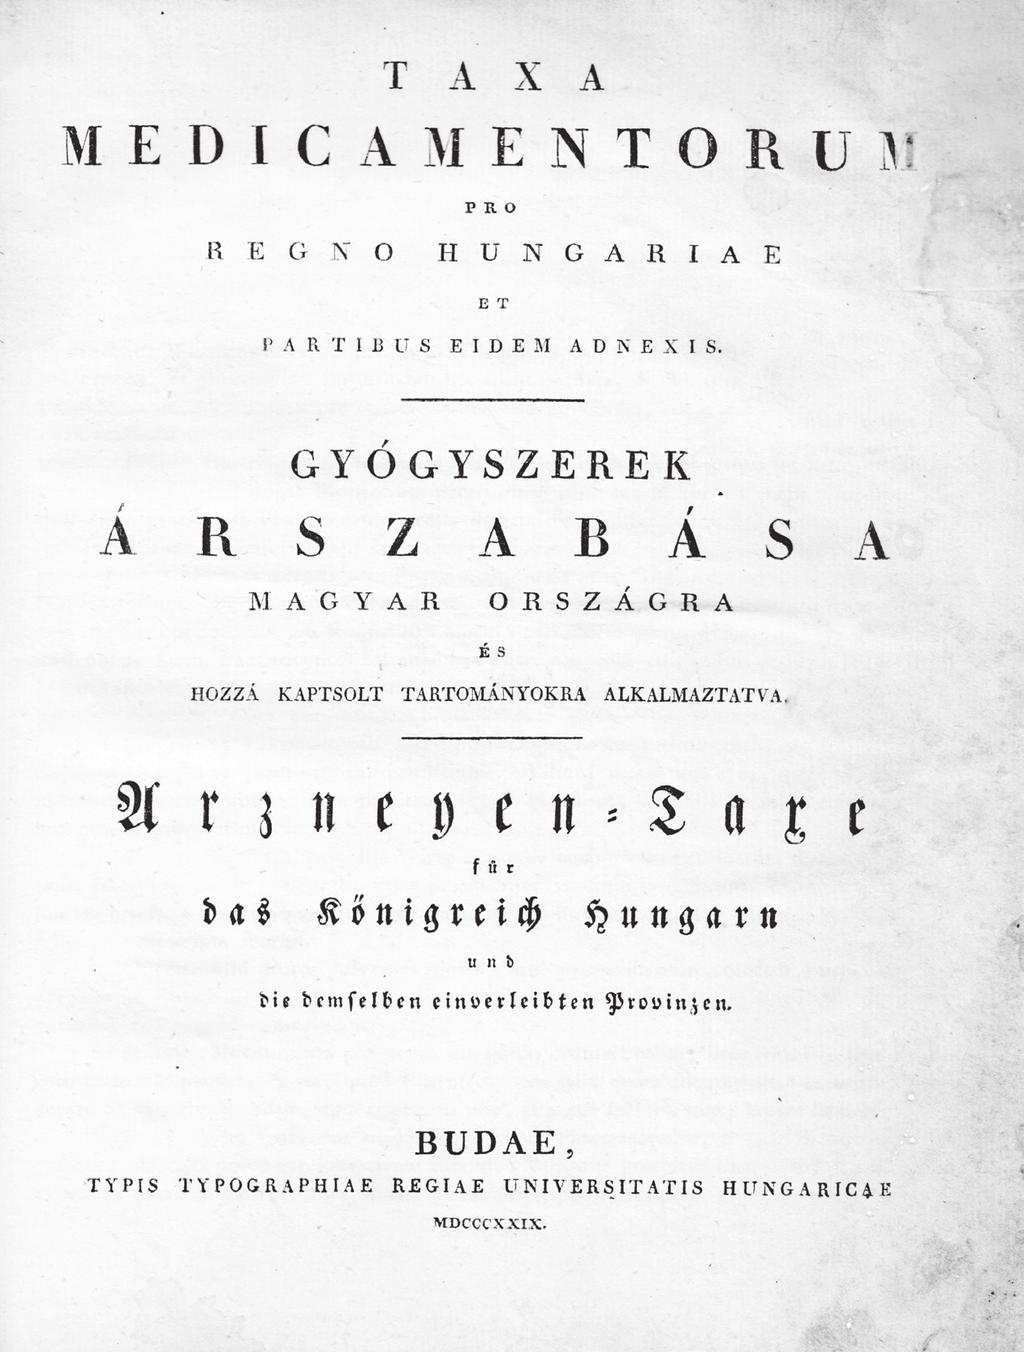 Az 1829-es magyar nyelvű gyógyszerárszabás, a kötet